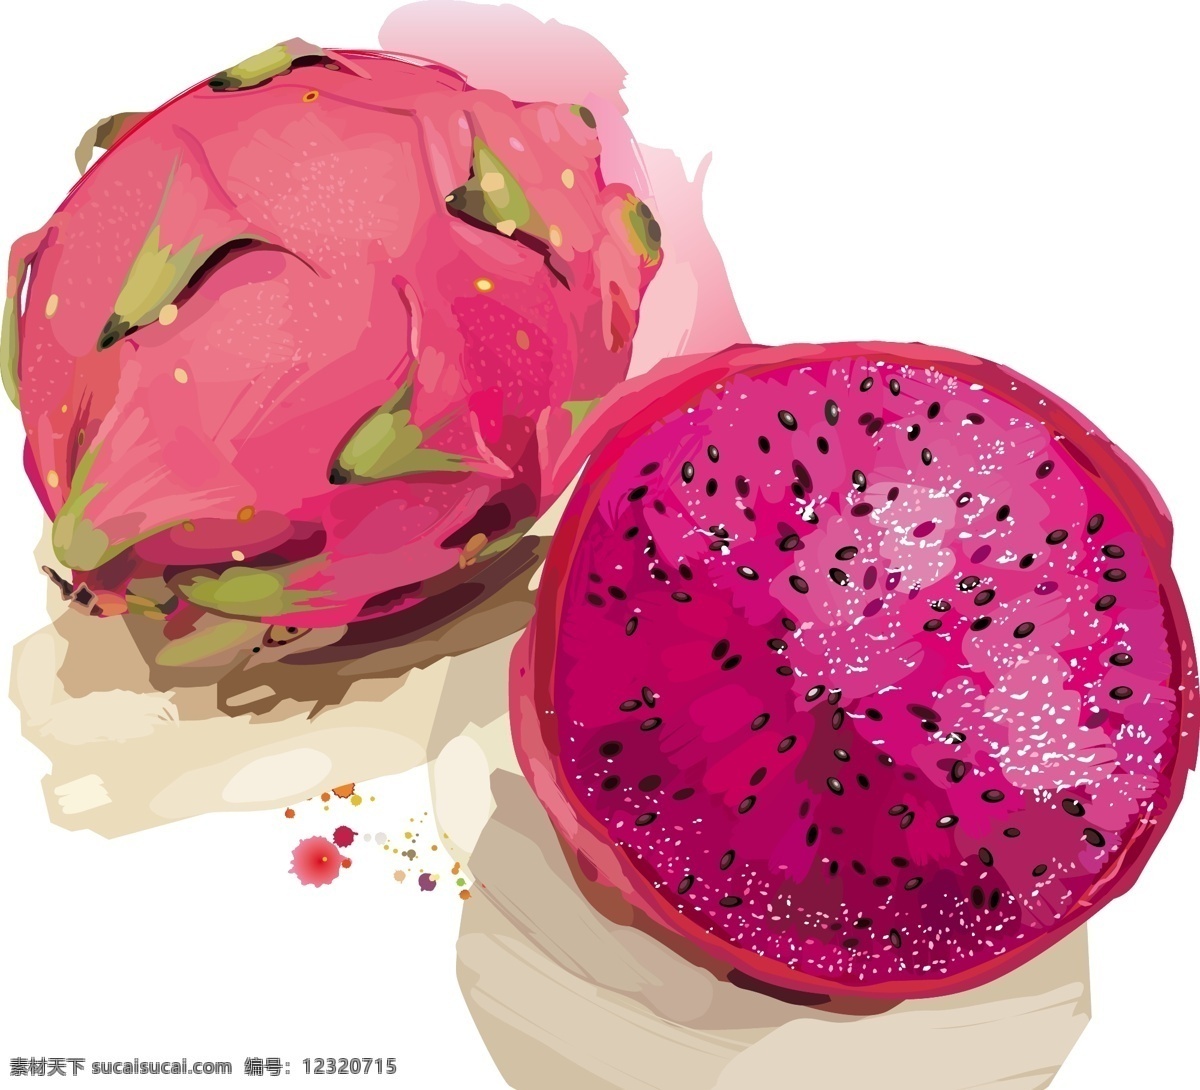 火龙果 热带水果 生物世界 矢量水果 水果 水果素材 矢量 模板下载 矢量火龙果 日常生活